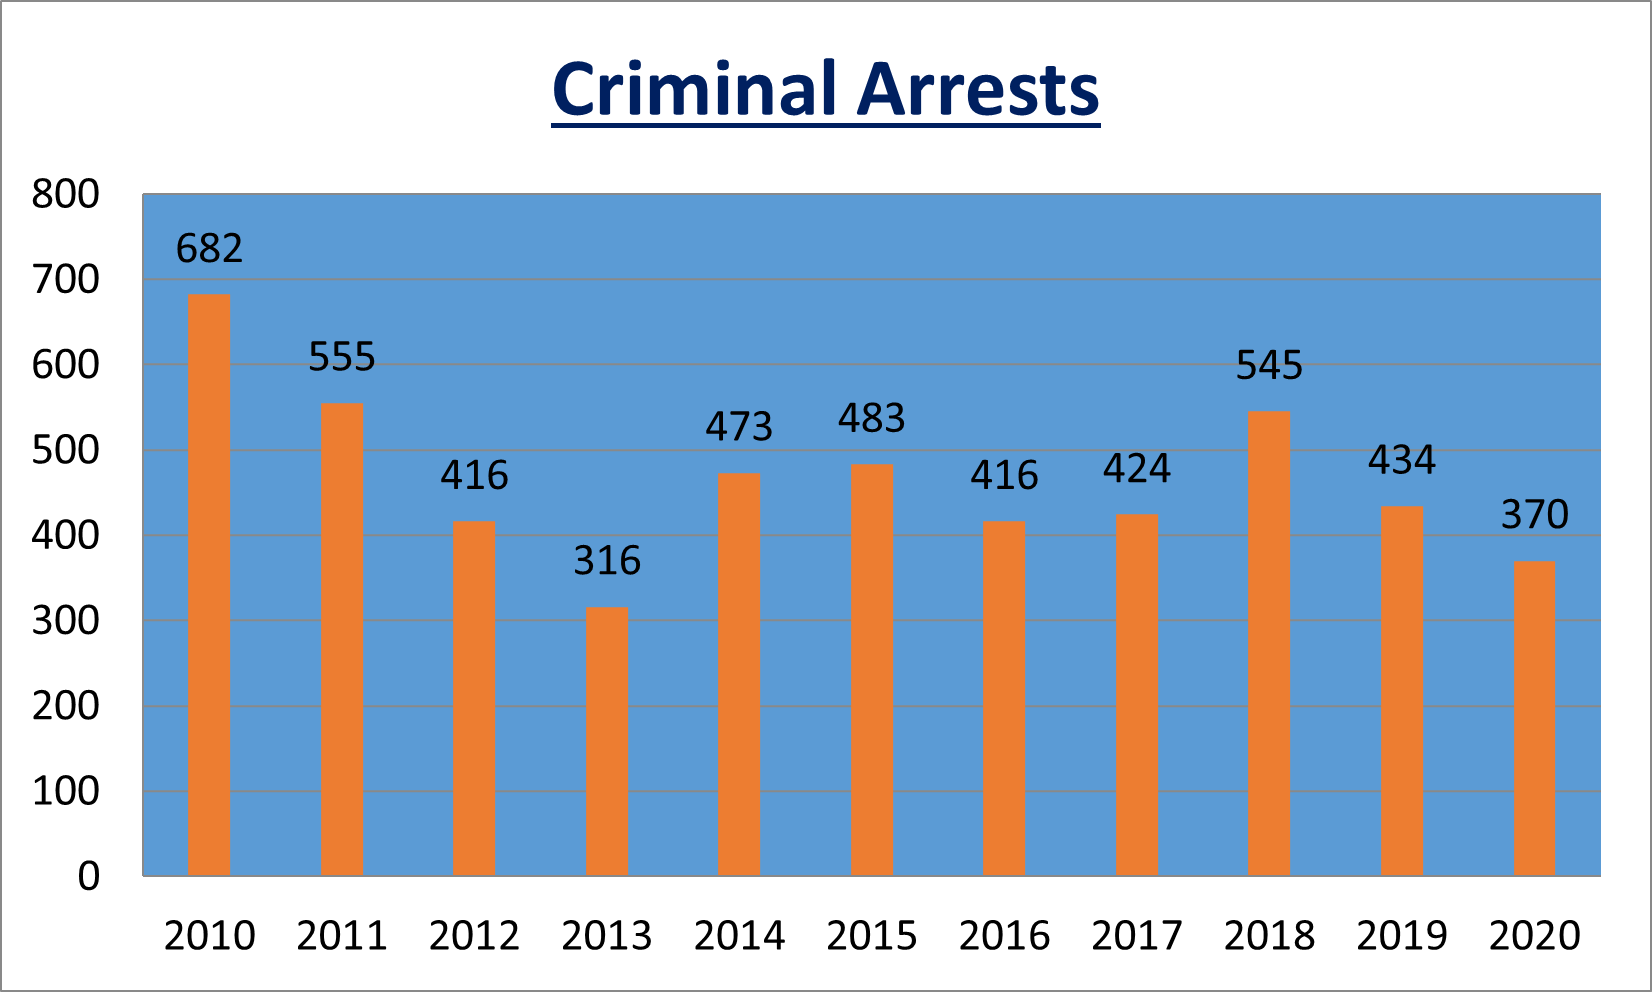 2020 criminal arrests